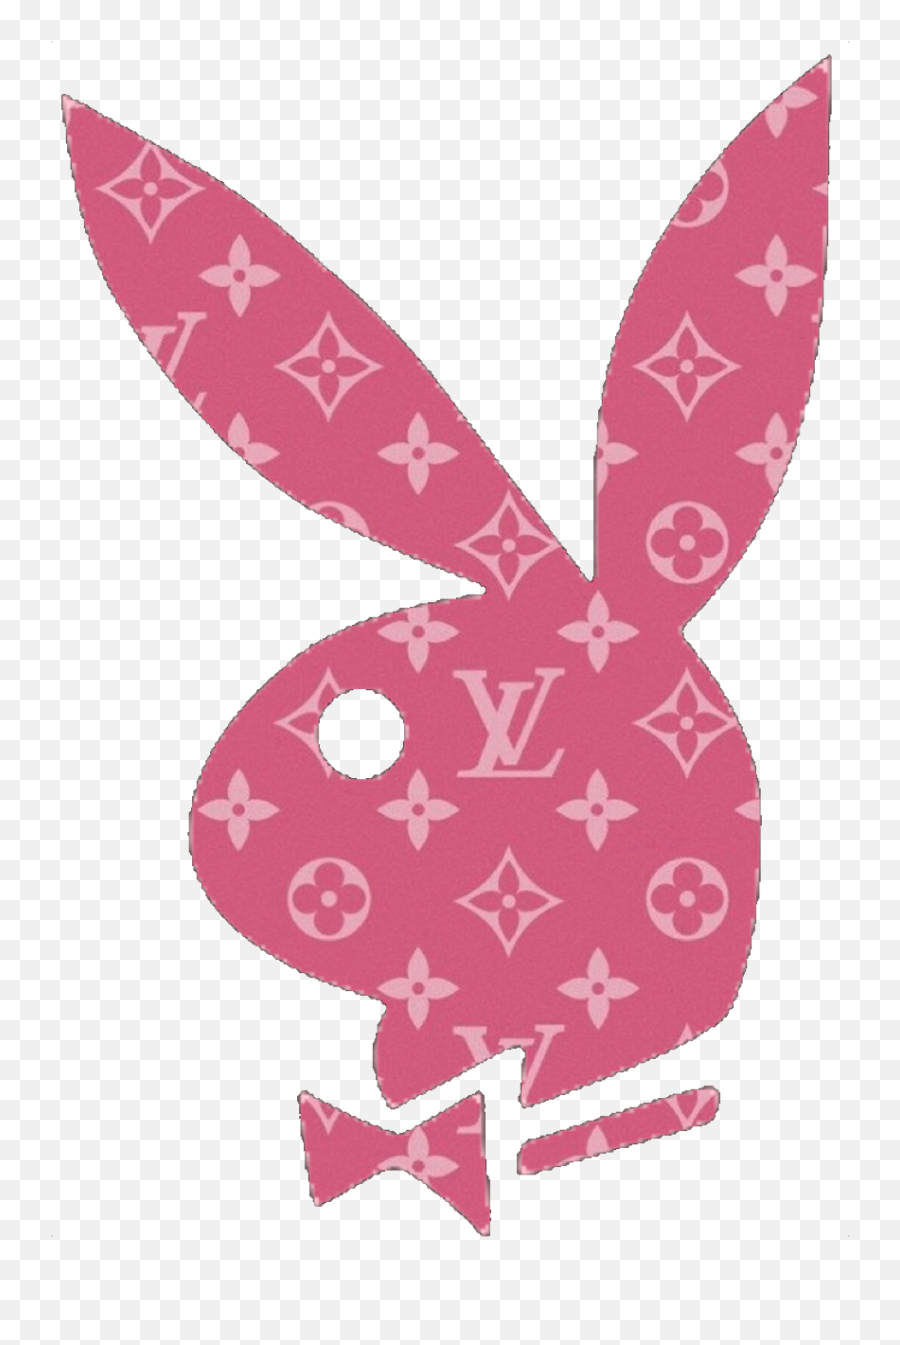 Playboy Logo Png - Play Boy Lv Emoji,Playboy Emoji - free